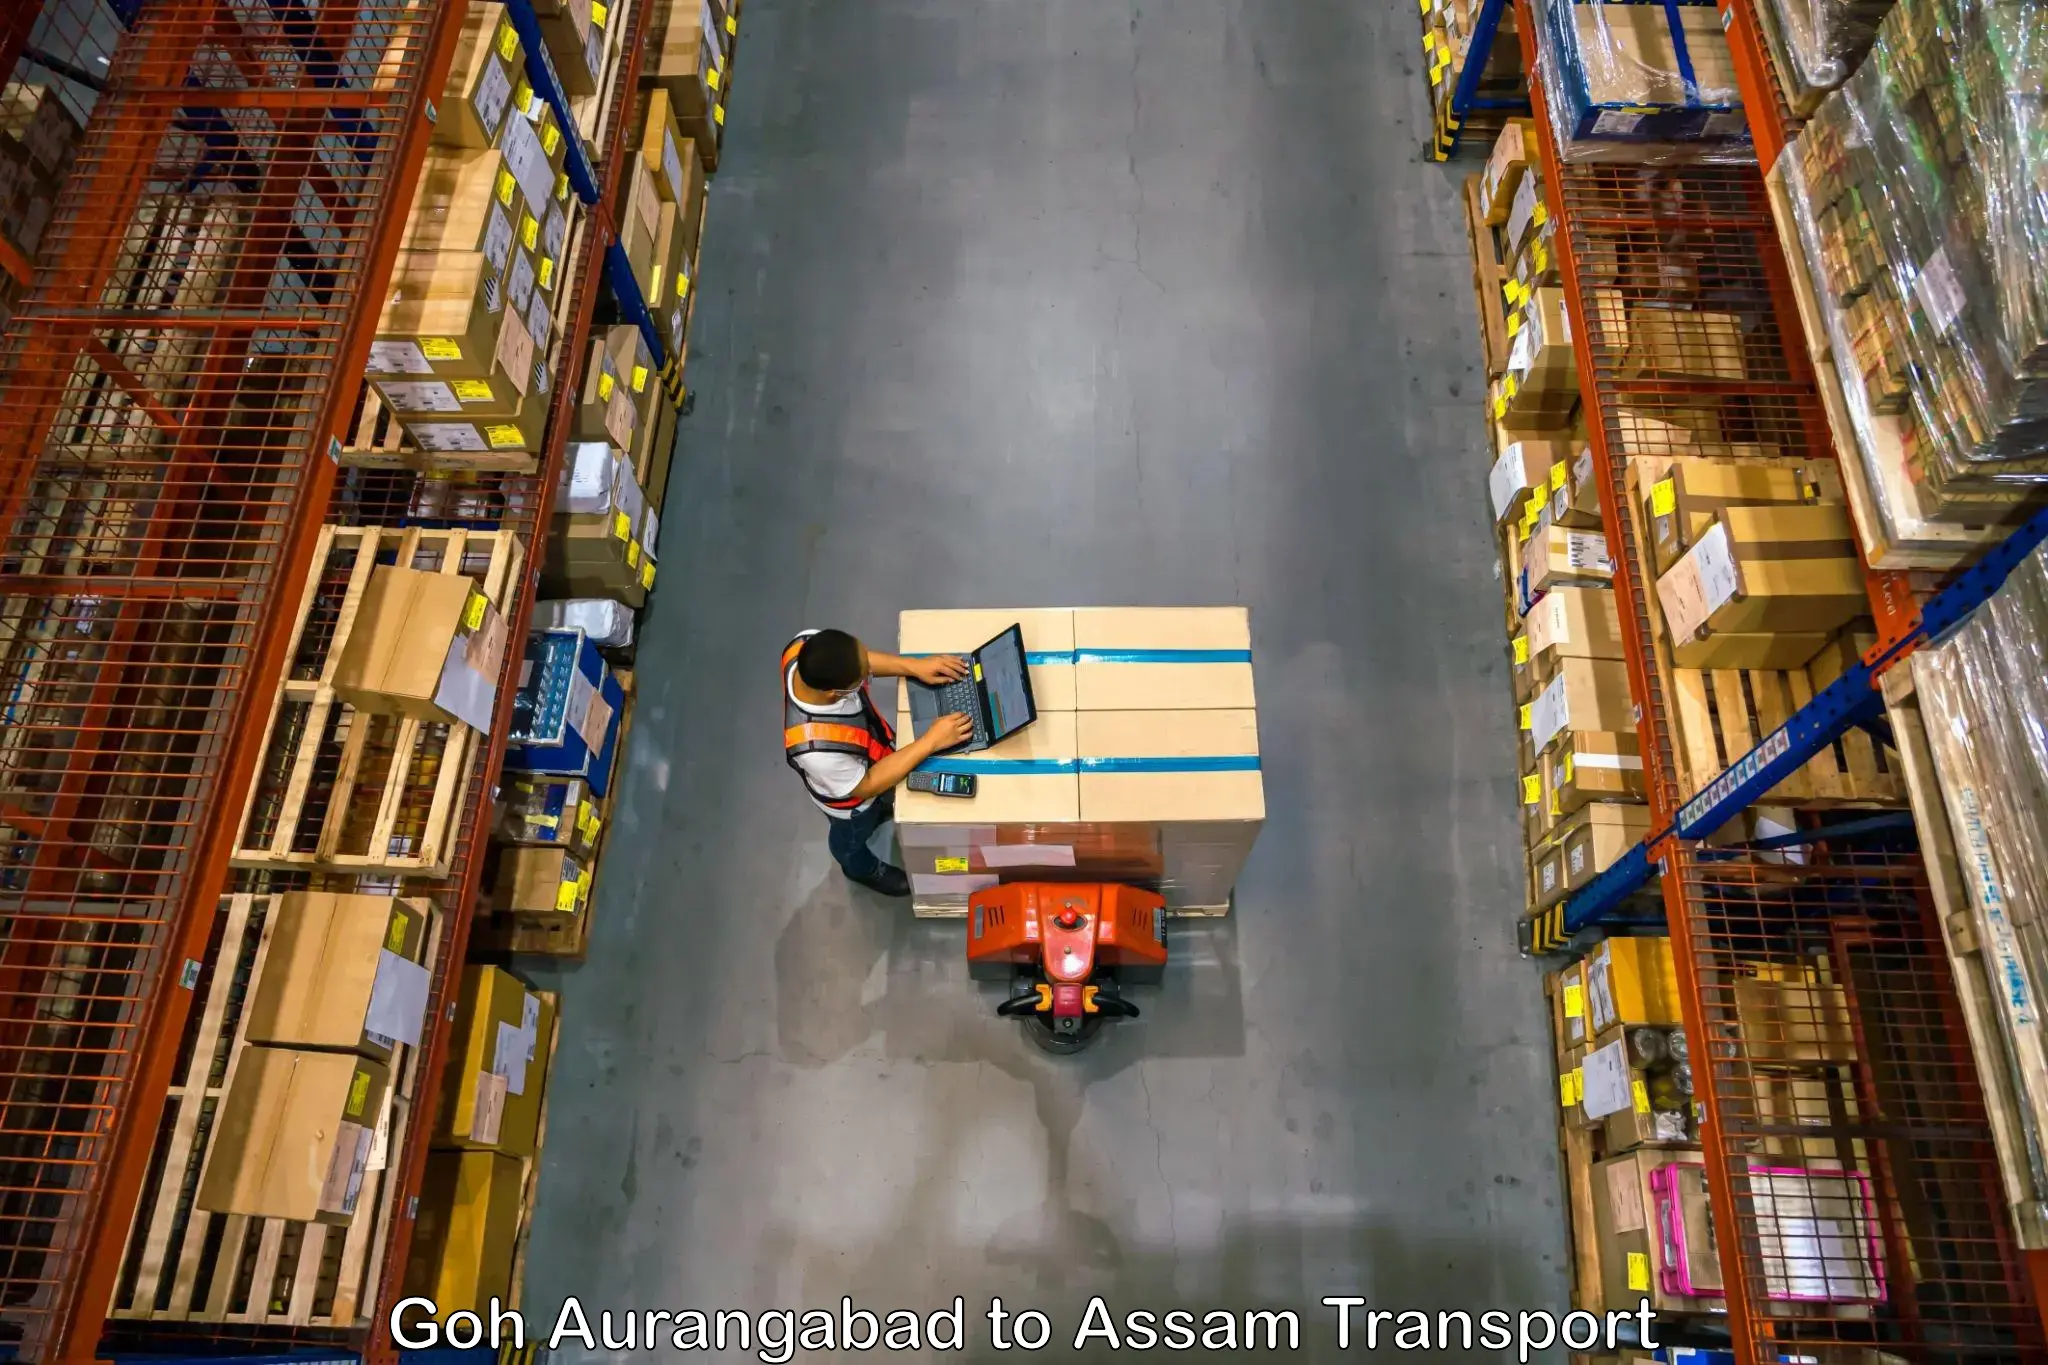 Goods delivery service Goh Aurangabad to Lala Assam